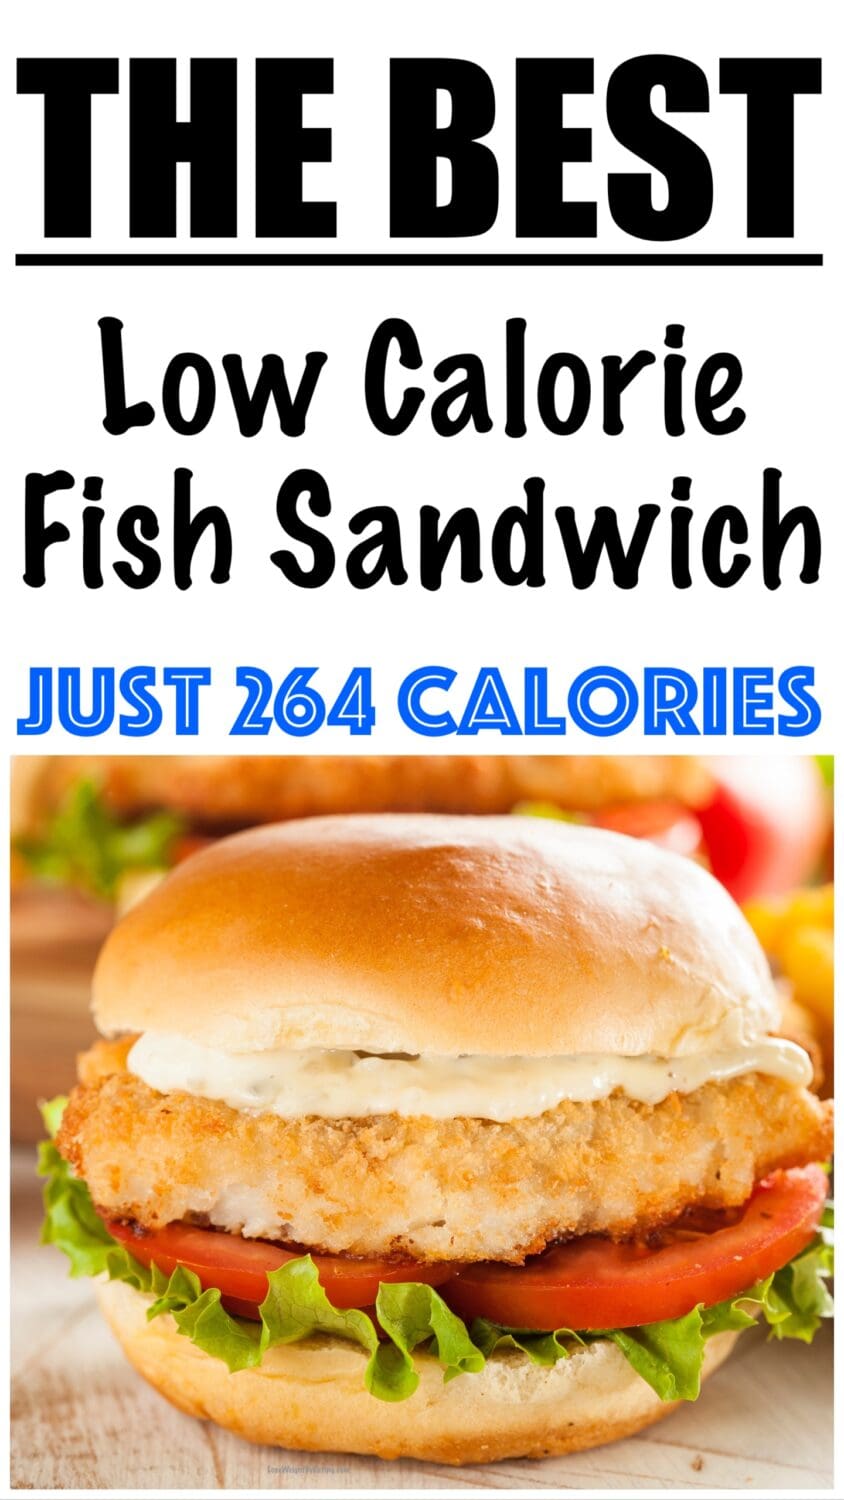 Low Calorie Fish Sandwich